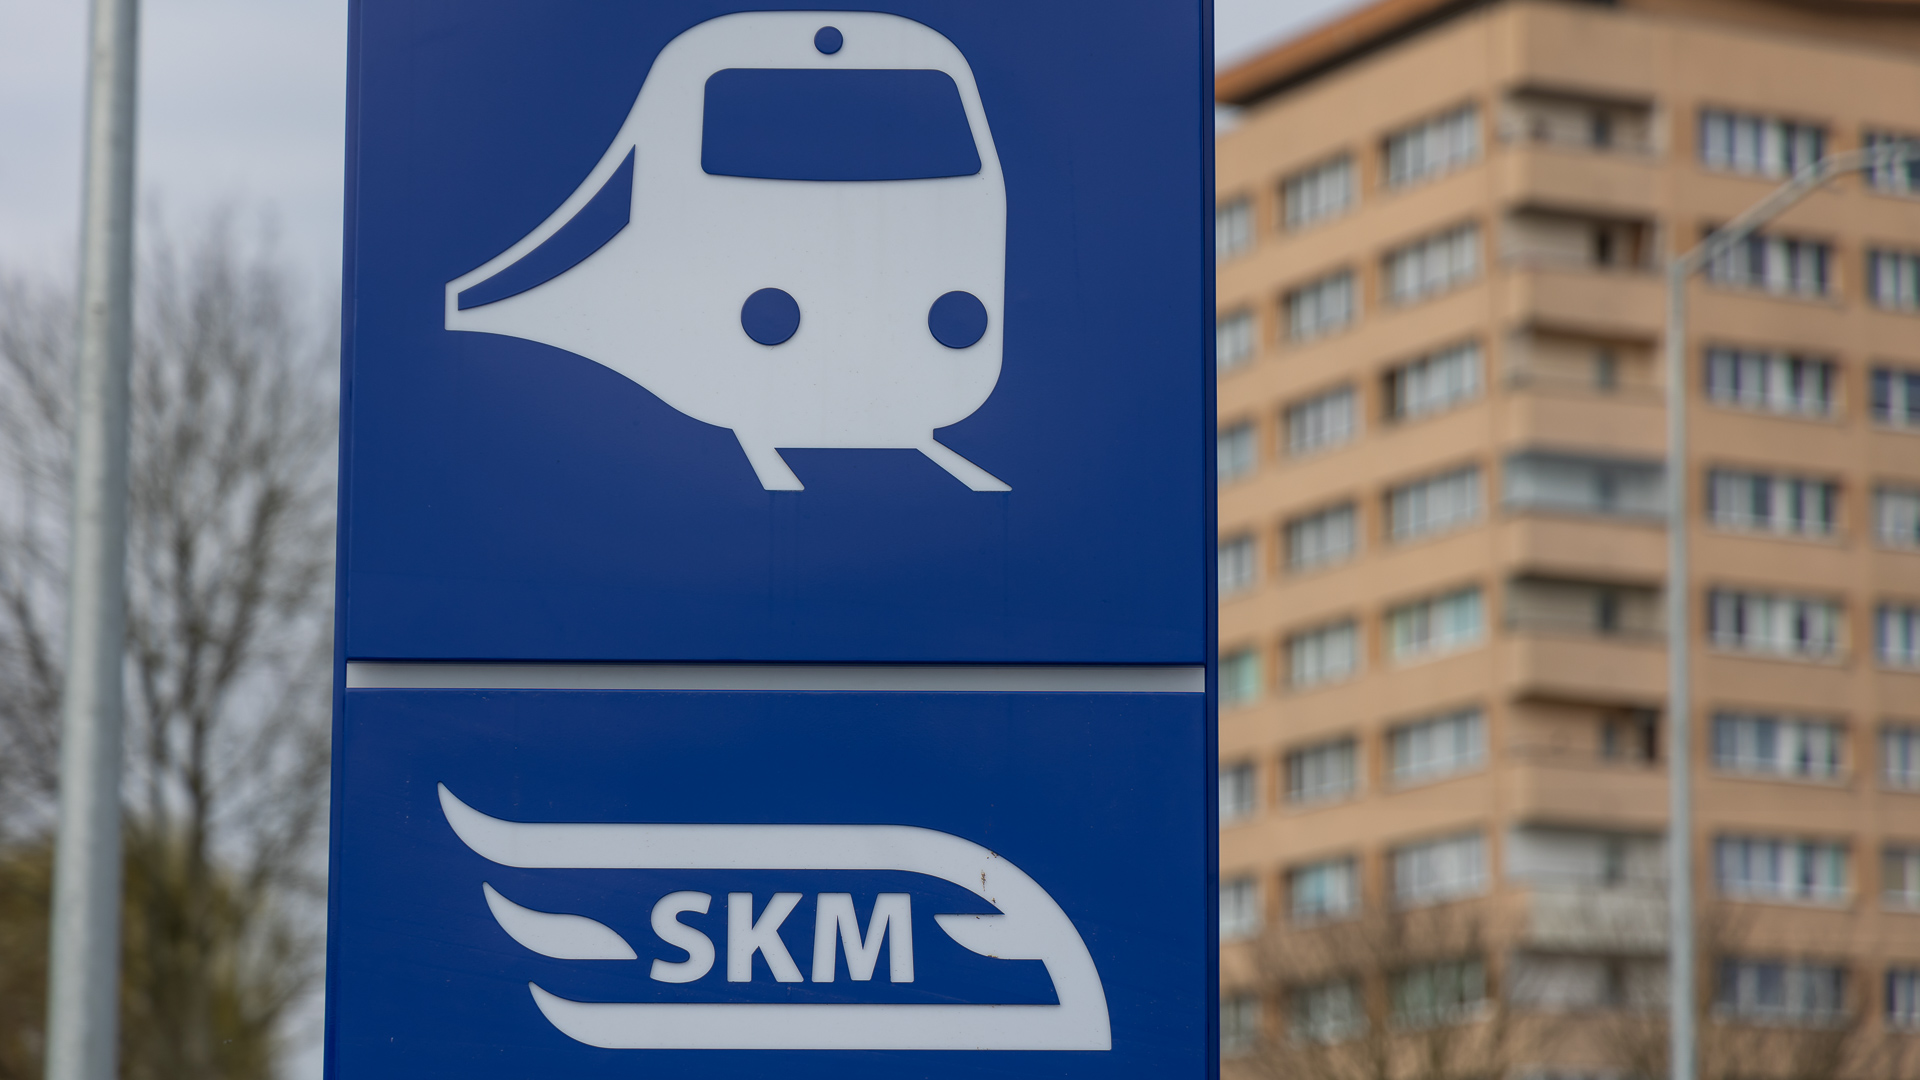 3 złote 60 groszy. Tyle będzie kosztował od 9 czerwca jednorazowy bilet na pociągi regionalne, dla pasażerów jeżdżących koleją pomiędzy stacjami w Szczecinie. To w ramach projektu Szczecińskiej Kolei Metropolitalnej.